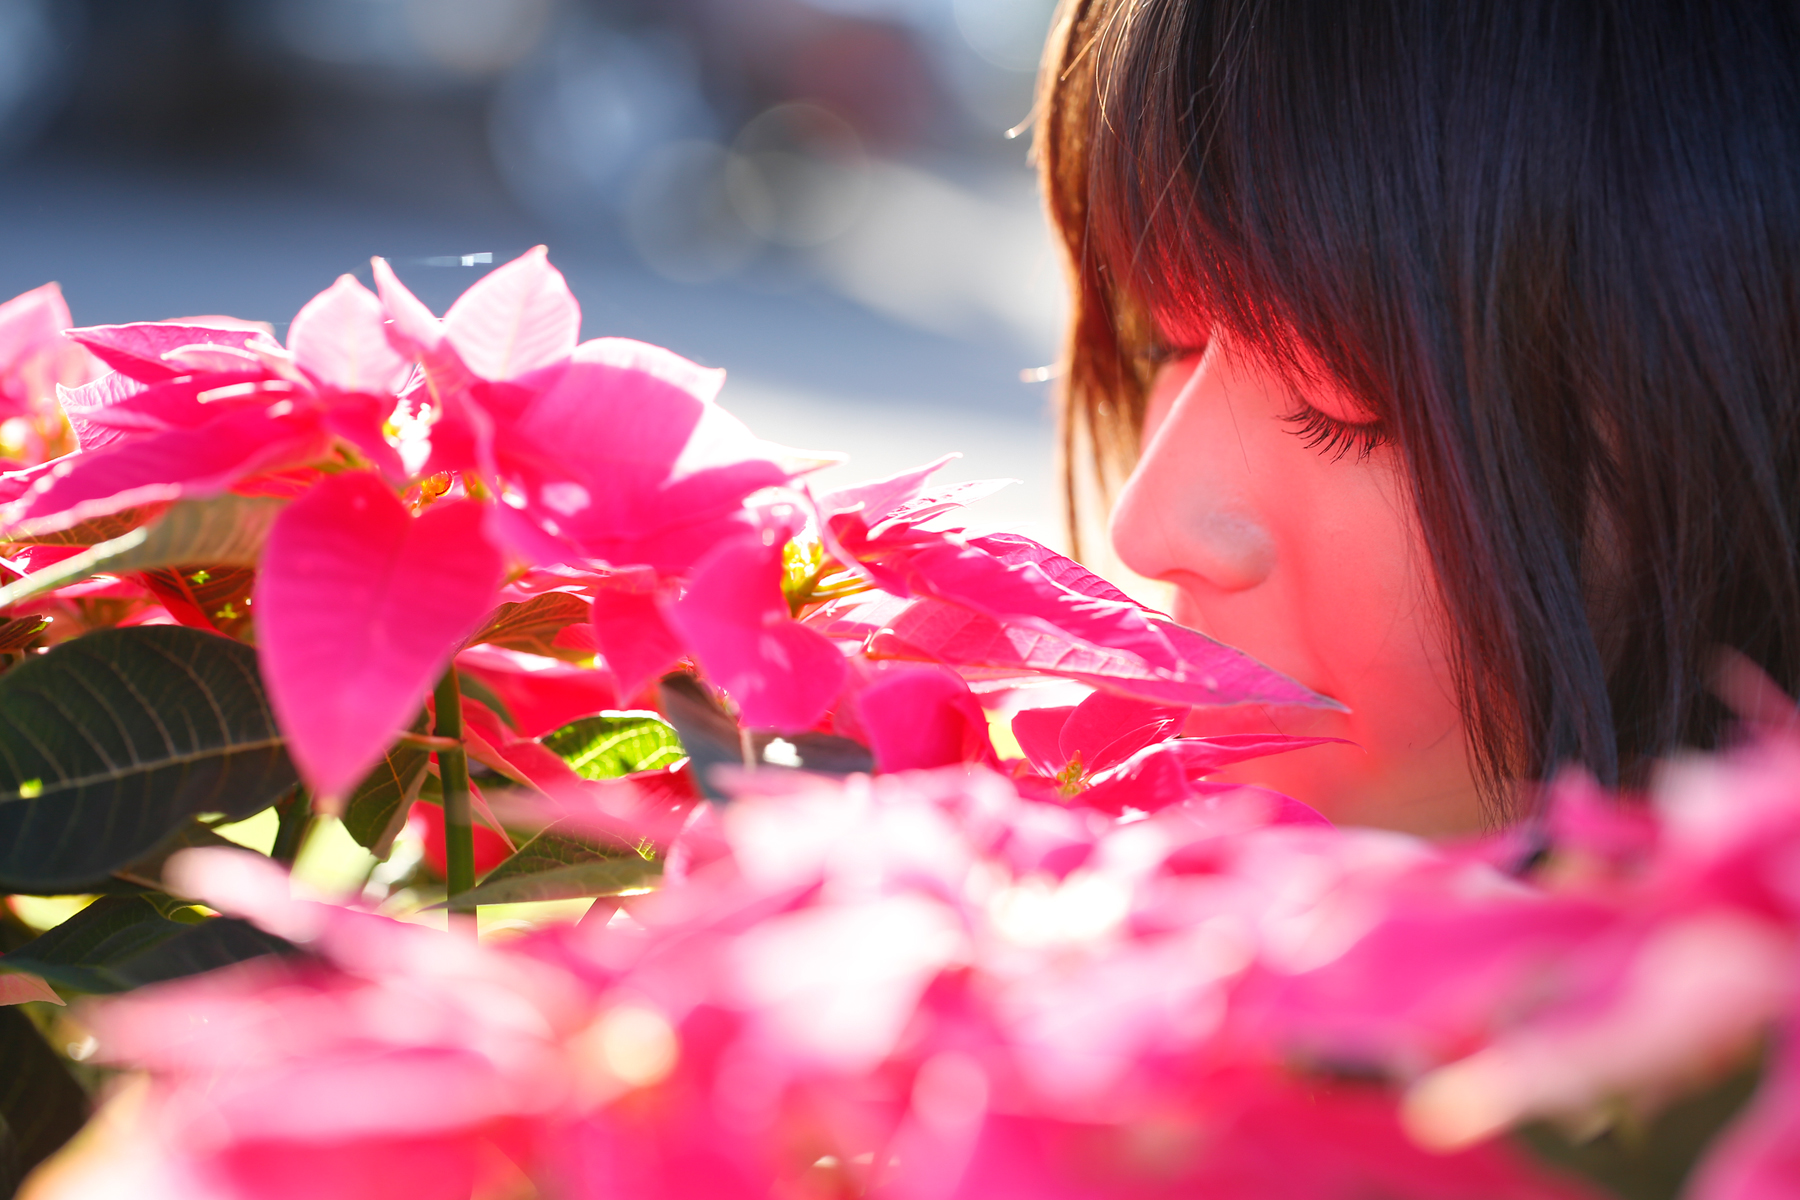 Фото Японская певица, участница группы C-ute, Яджима Майми / Yajima Maimi, вдыхает аромат цветов